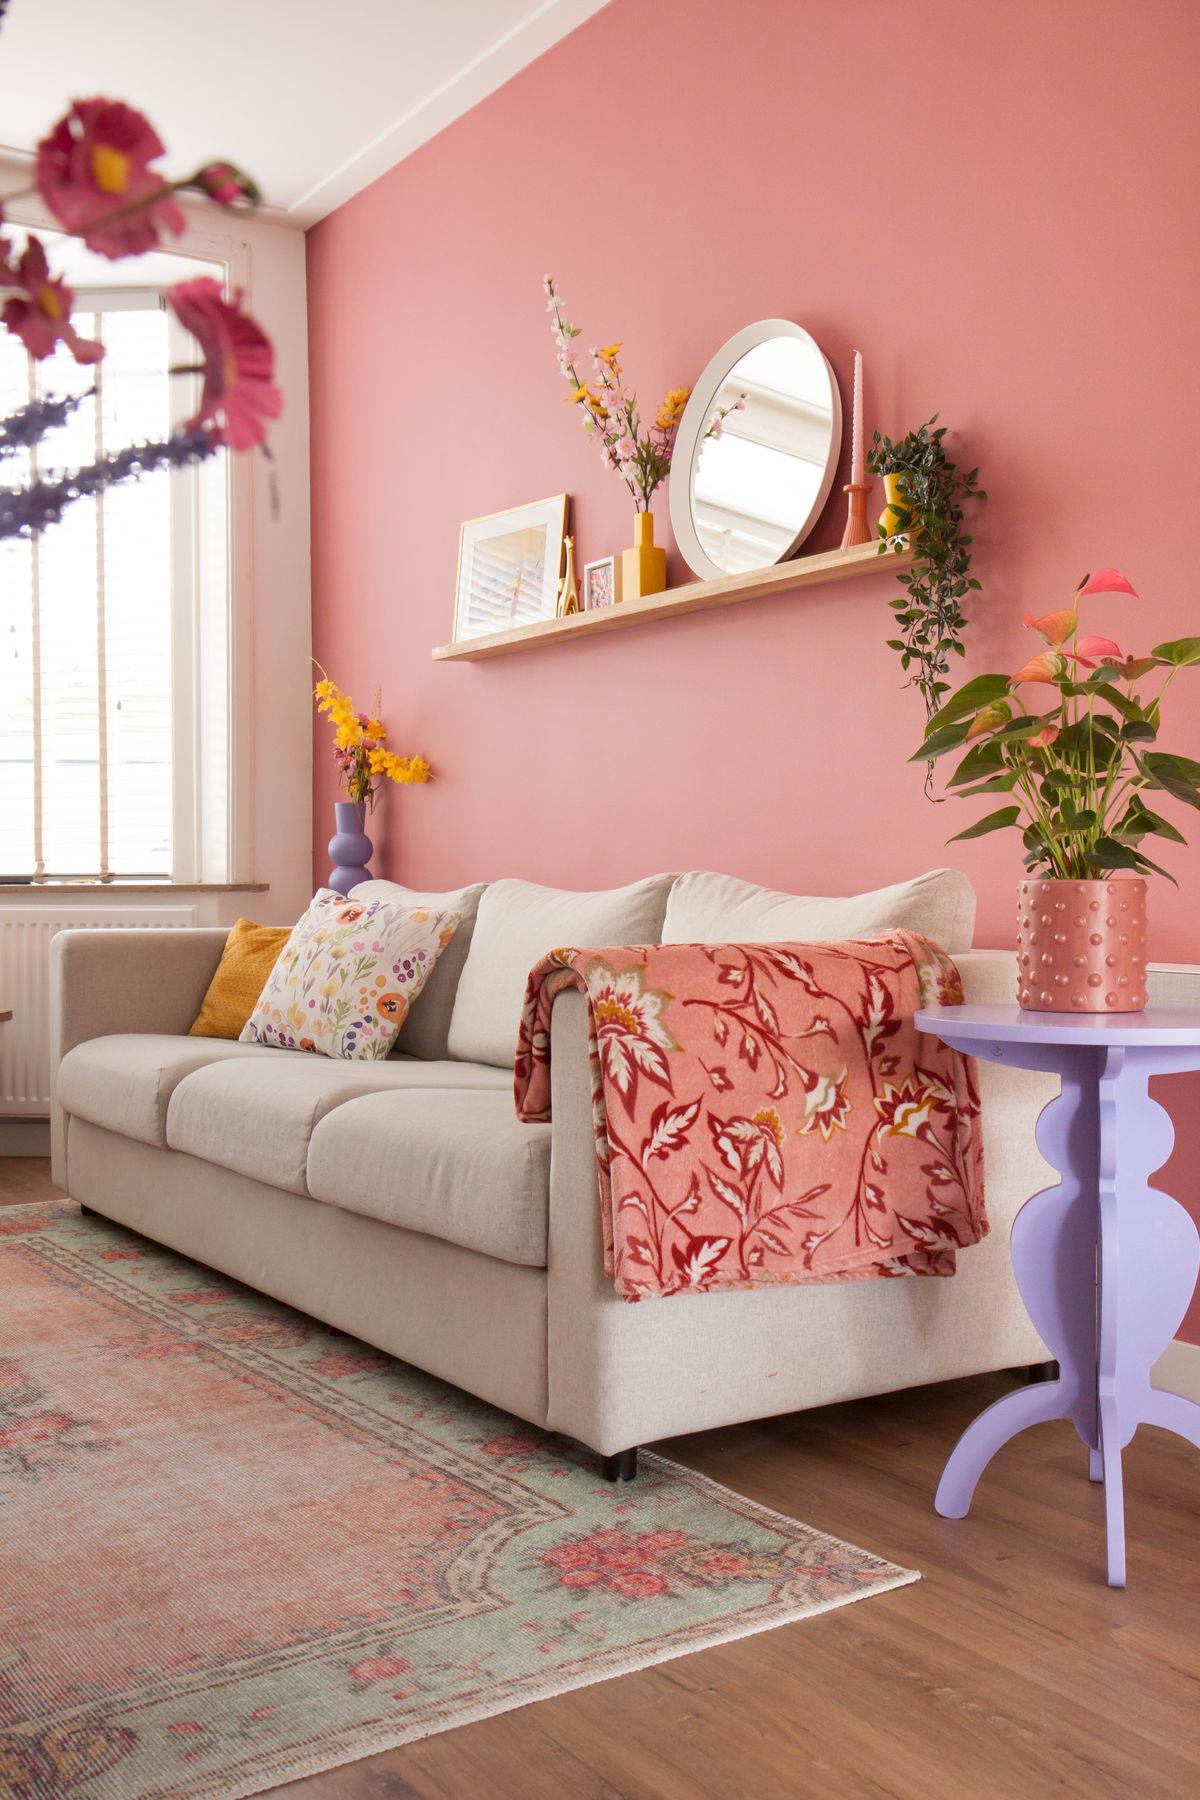 Haal de zomer in huis met deze roze muurverf in de woonkamer